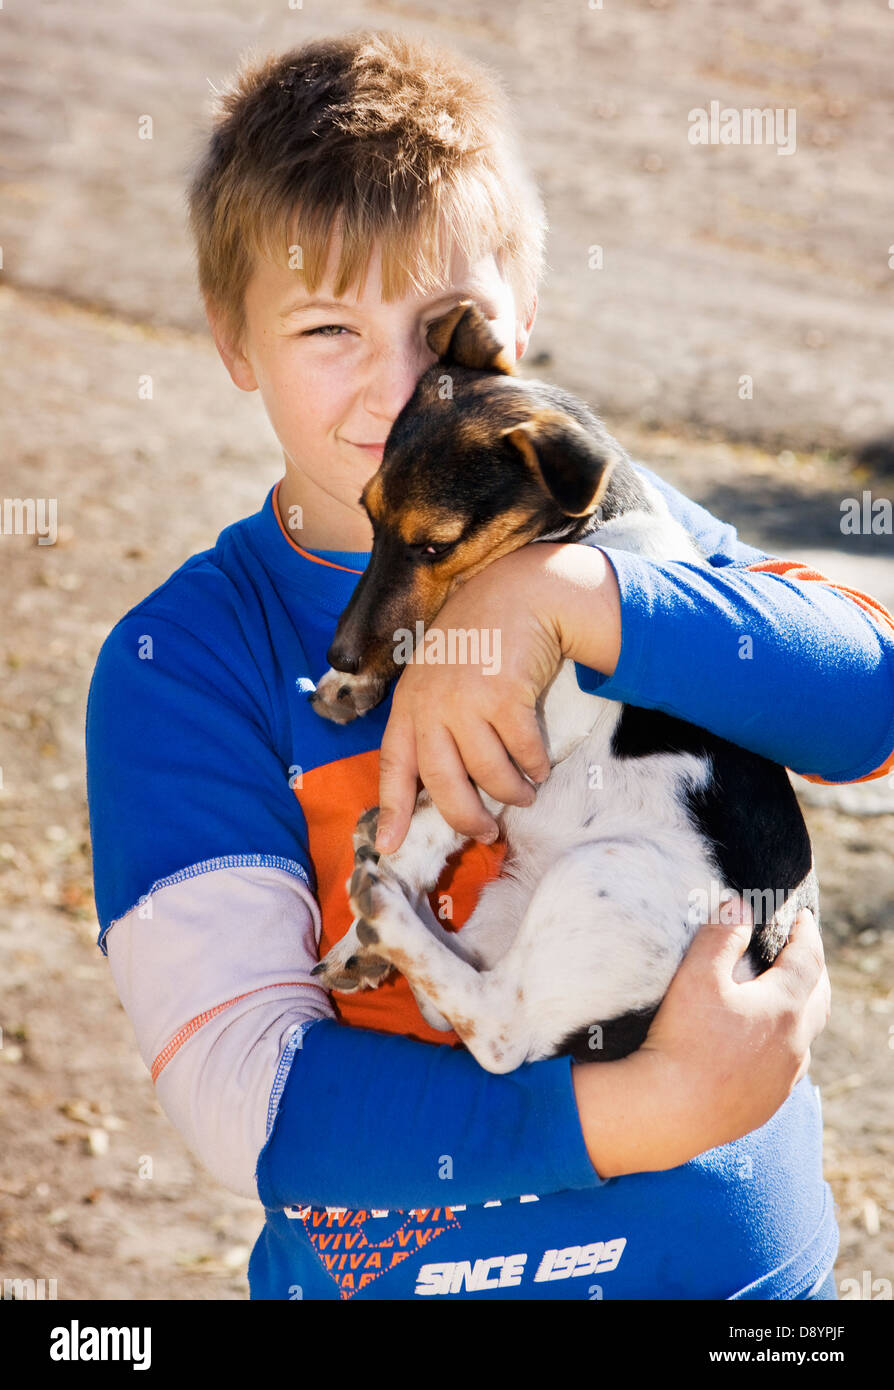 Teenage boy holding dog Stock Photo